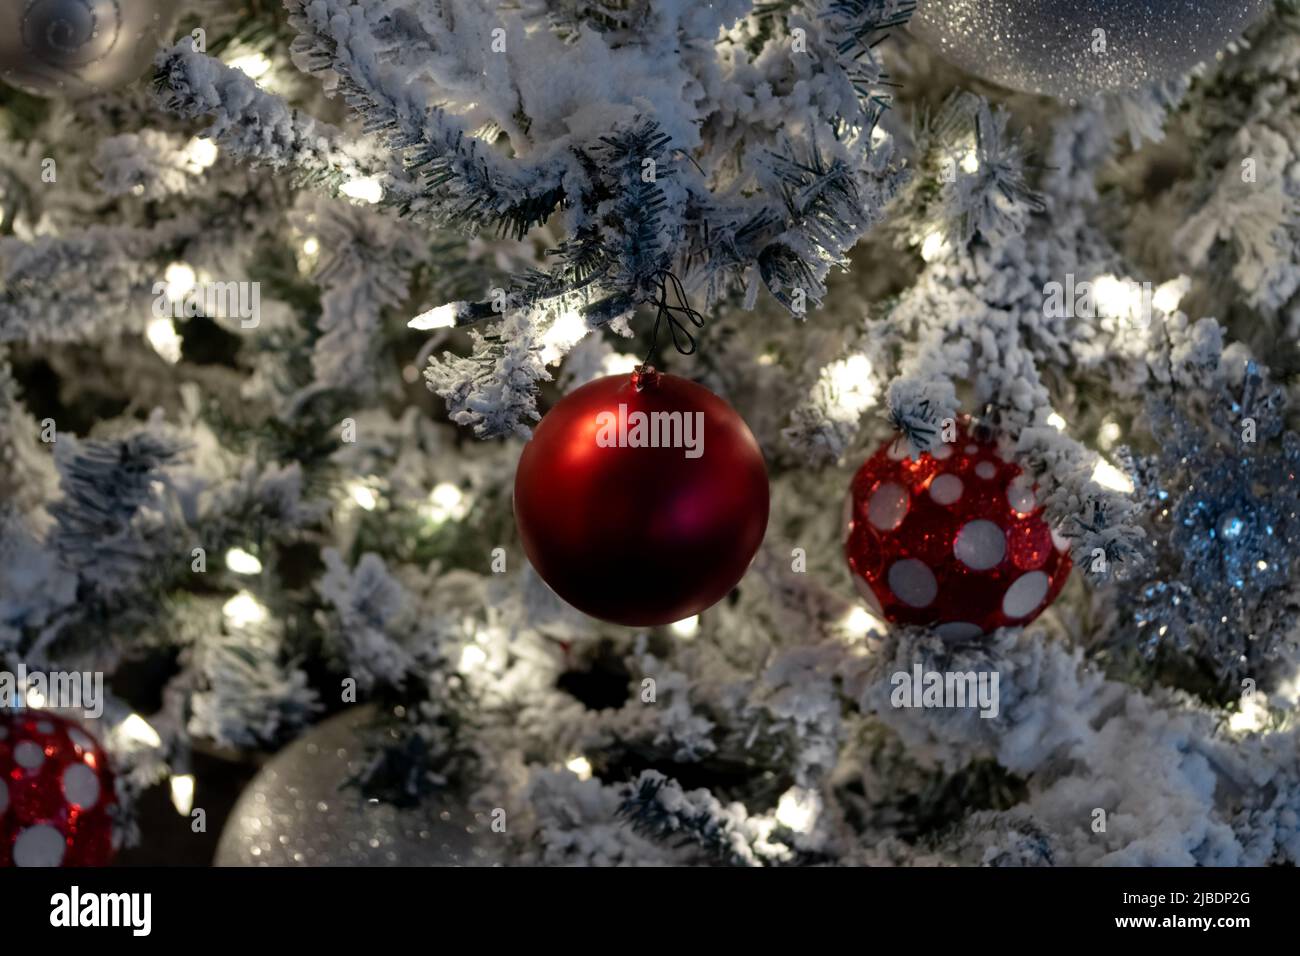 primer plano decoración de navidad escena, luces blancas en el árbol cubierto de nieve con bolas de navidad rojo y blanco, festiva escena de vacaciones Foto de stock